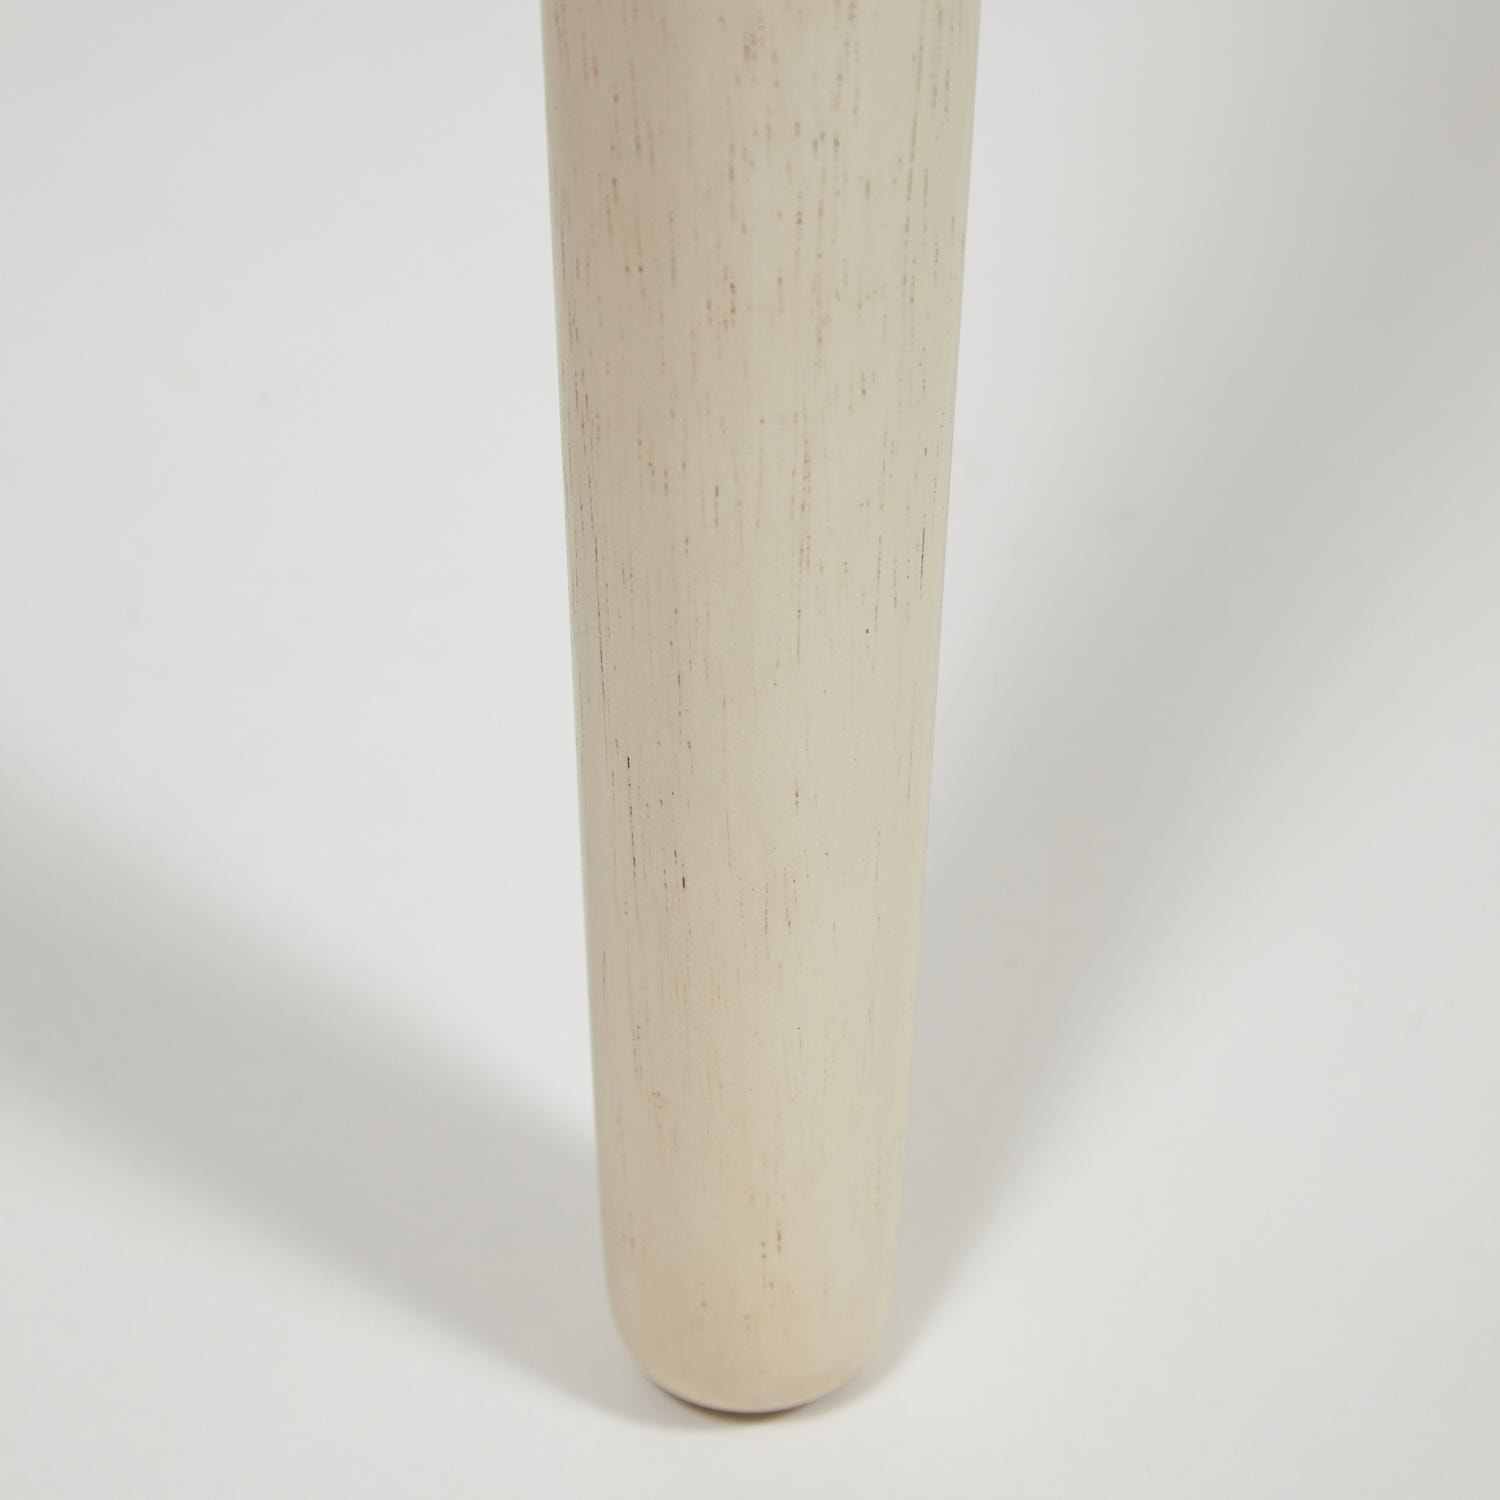 CT3052 Tanger стол с плиткой дерево гевея/плитка, 74*134*75см, античный белый, рисунок - марокко